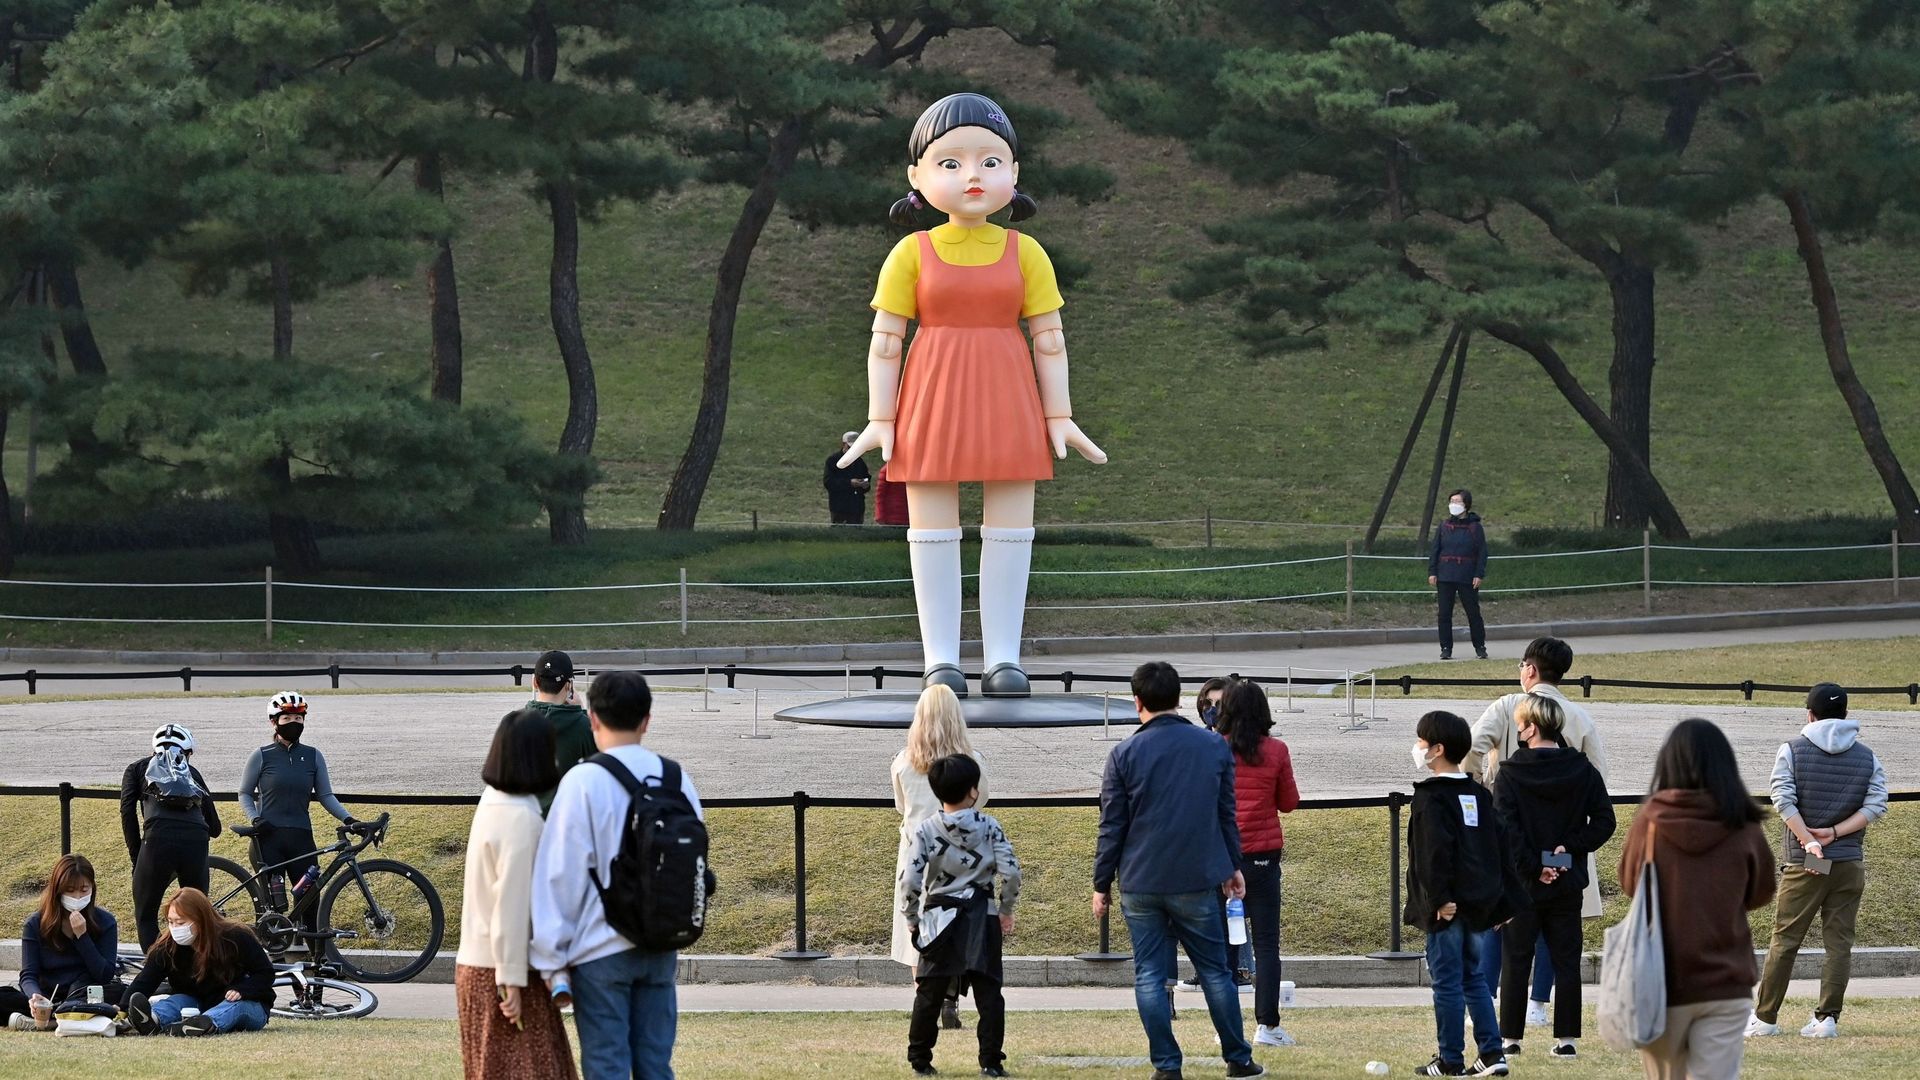 La poupée nommée 'Younghee' – présentée dans la série Netflix "Squid Game" – exposée dans un parc à Séoul le 26 octobre 2021. Jung Yeon-je / AFP